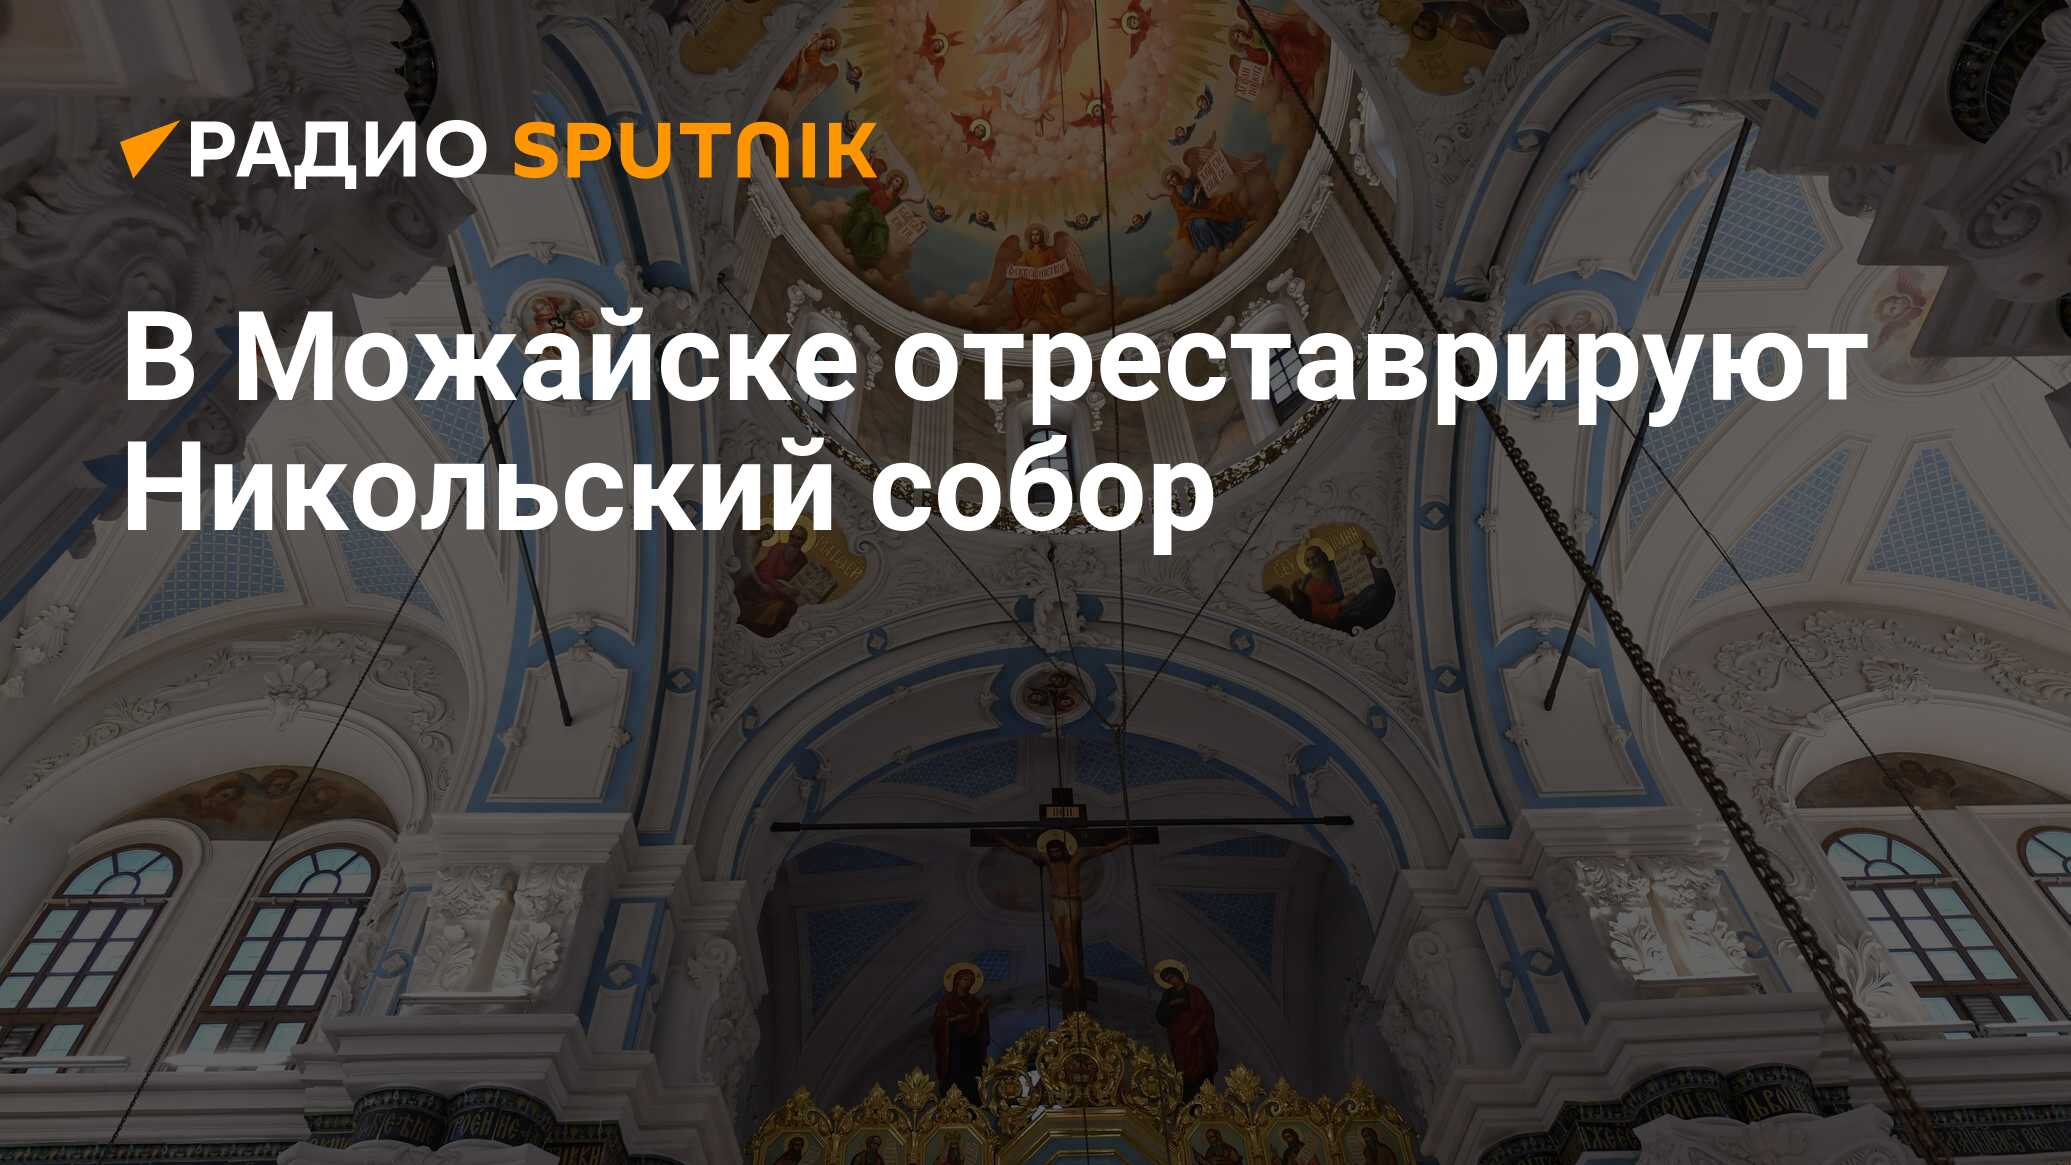 Воскресенский собор Новоиерусалимского монастыря убранство